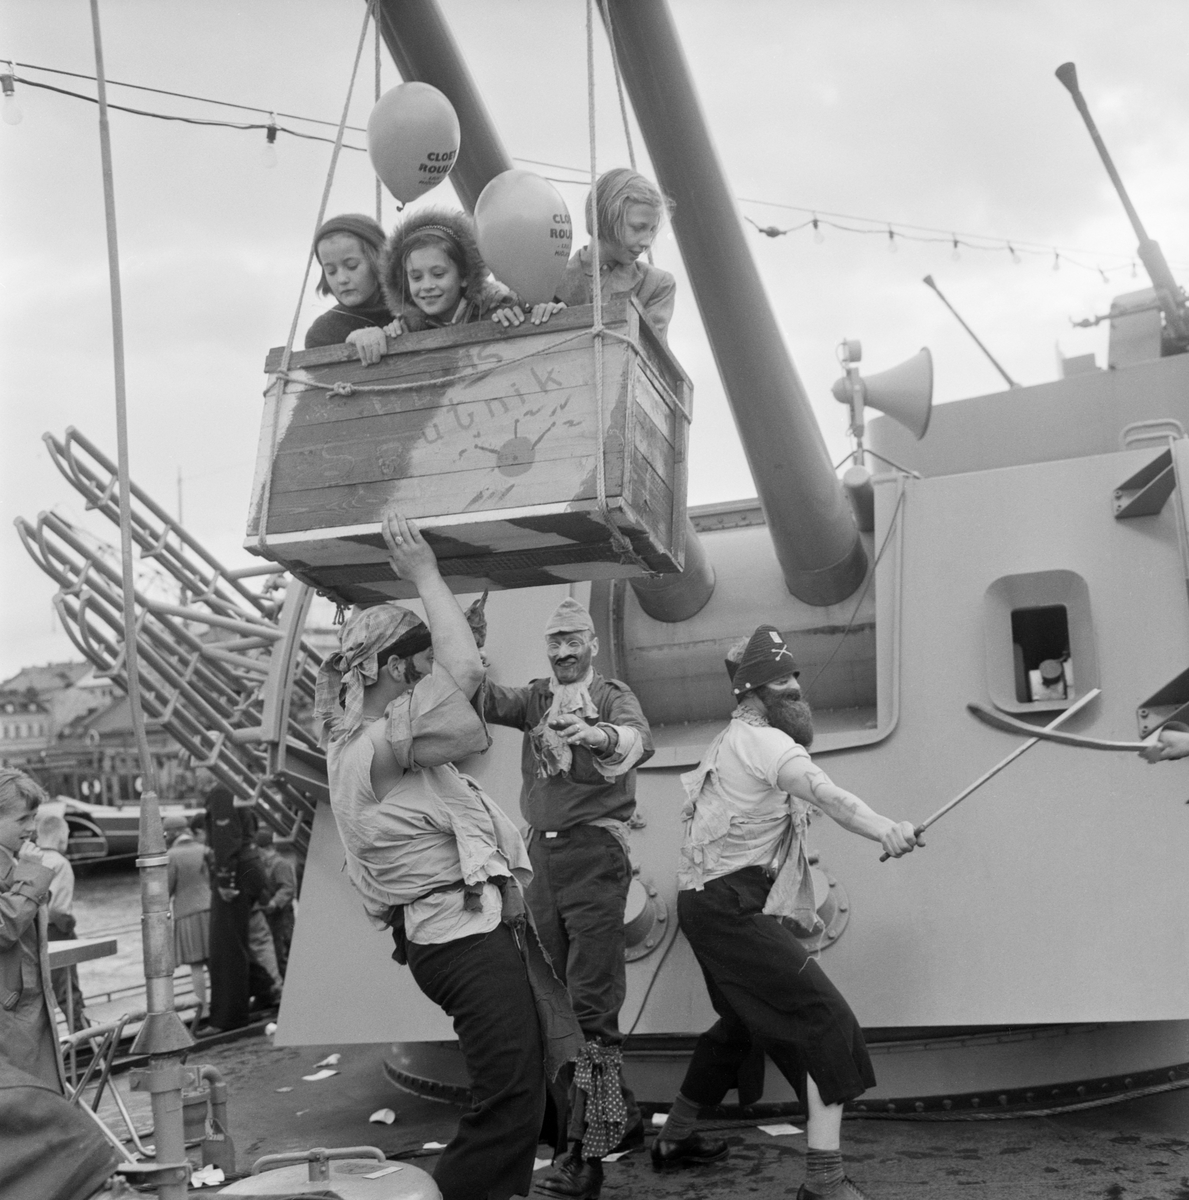 Uppochnervända dagen. Marinens sjömän har blivit sjörövare och Sputnik svingar i kanonrören. Det hände under söndagen den 18 maj 1958, då det arrangerades besöksdag med barnlek ombord på jagaren HMS Östergötland, som för dagen låg förtöjd i Norrköpings inre hamn.